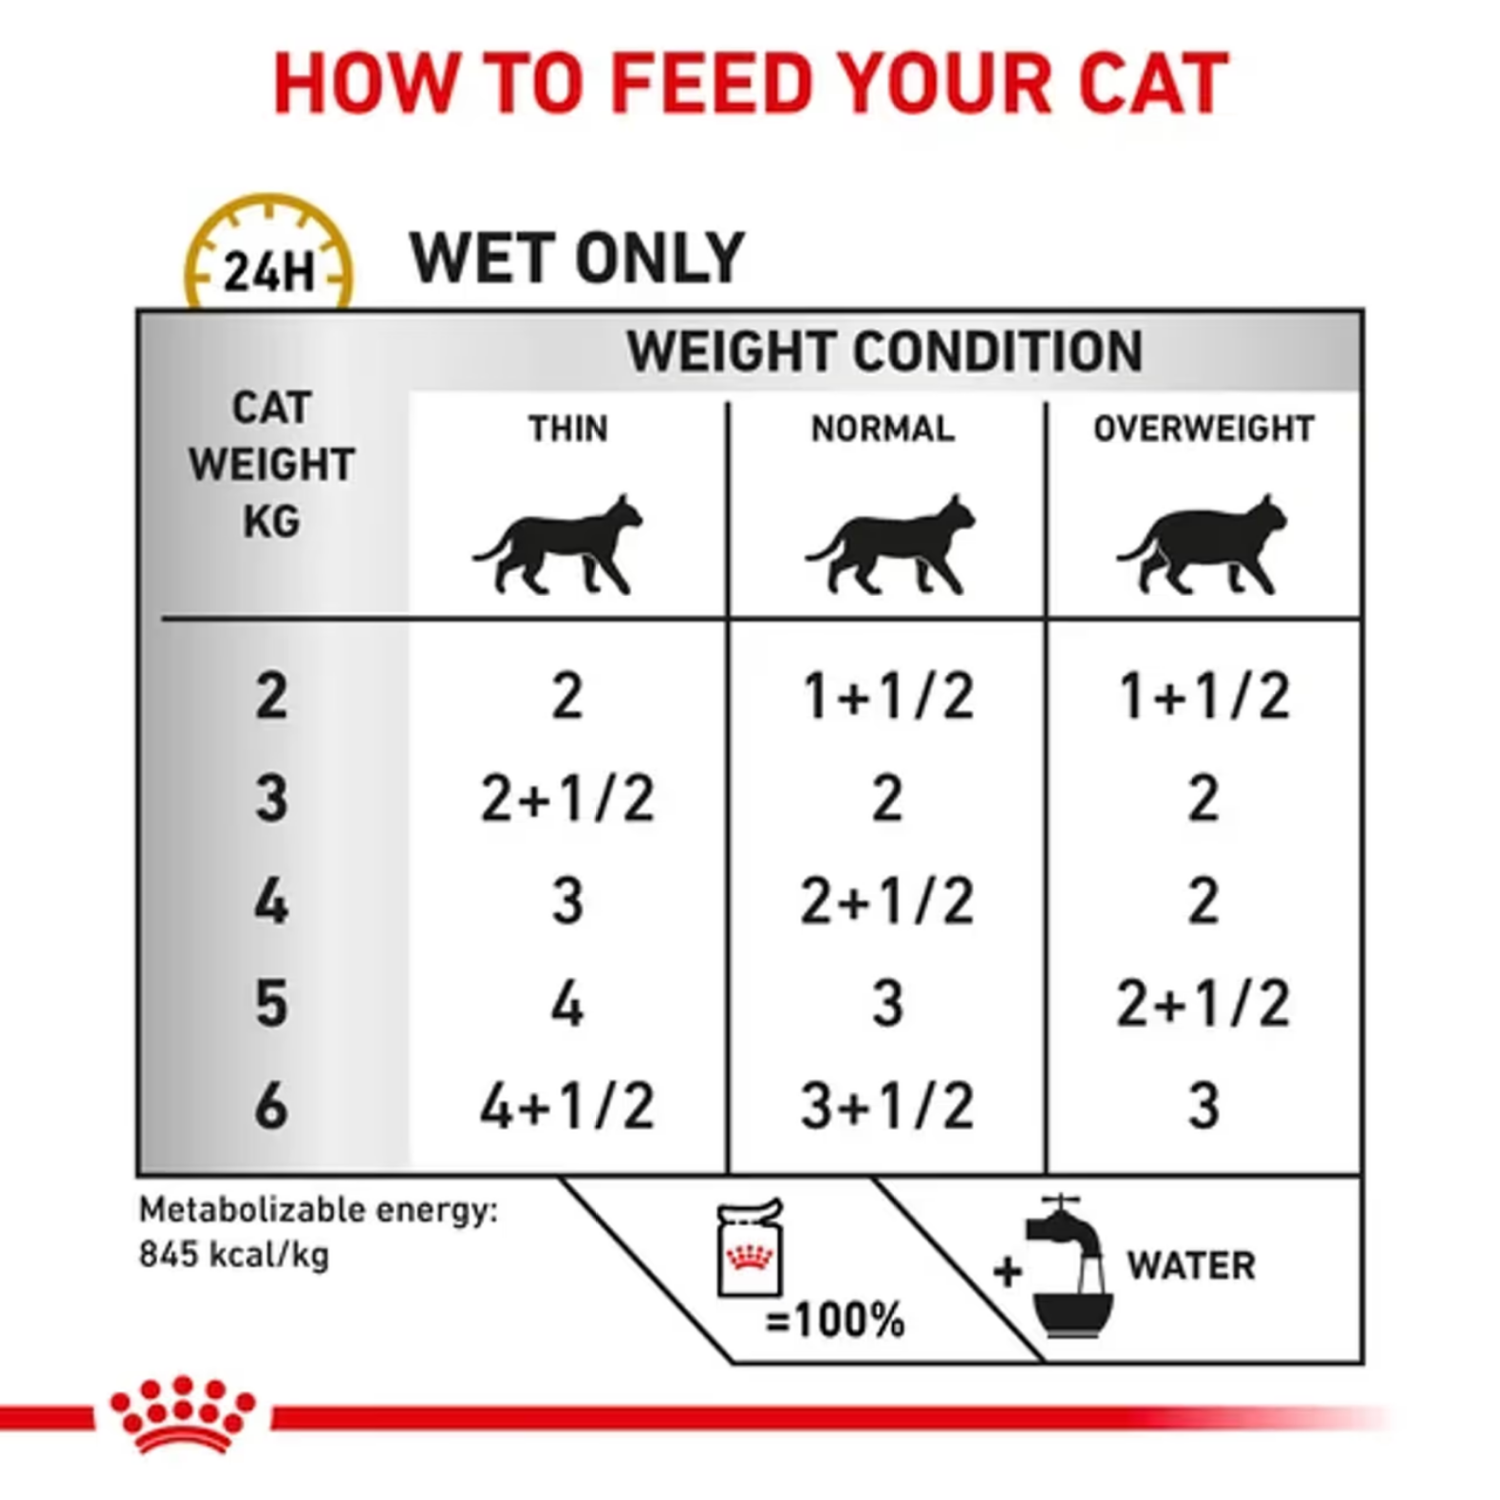 Pate Thức Ăn Ướt Cho Mèo Bị Sỏi Thận Royal Canin Urinary S/O Wet Gói 85g